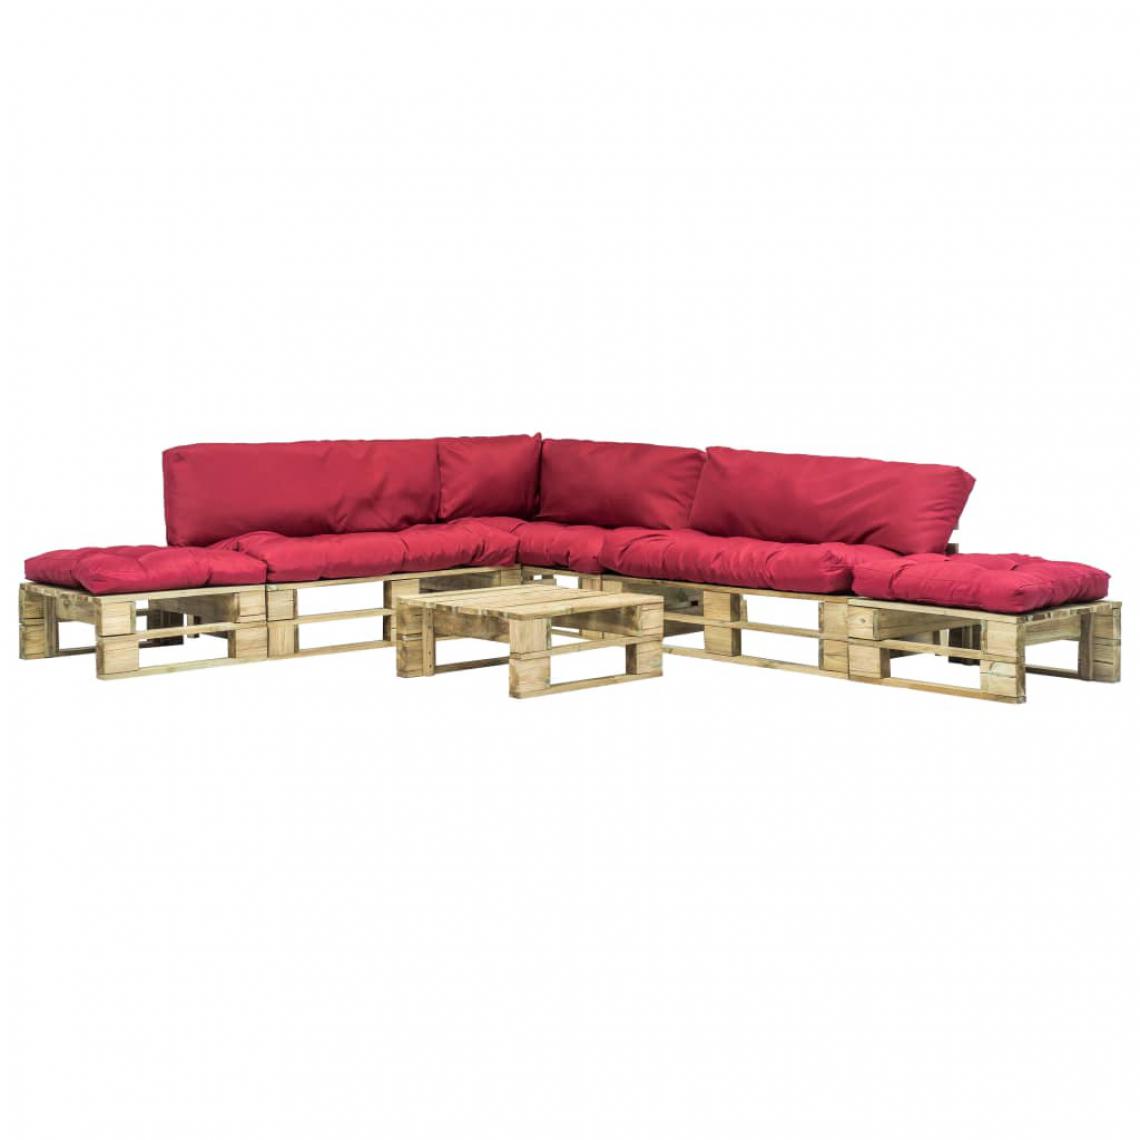 Chunhelife - Chunhelife Salon de jardin 6 pcs palettes avec coussins rouges Bois - Ensembles canapés et fauteuils